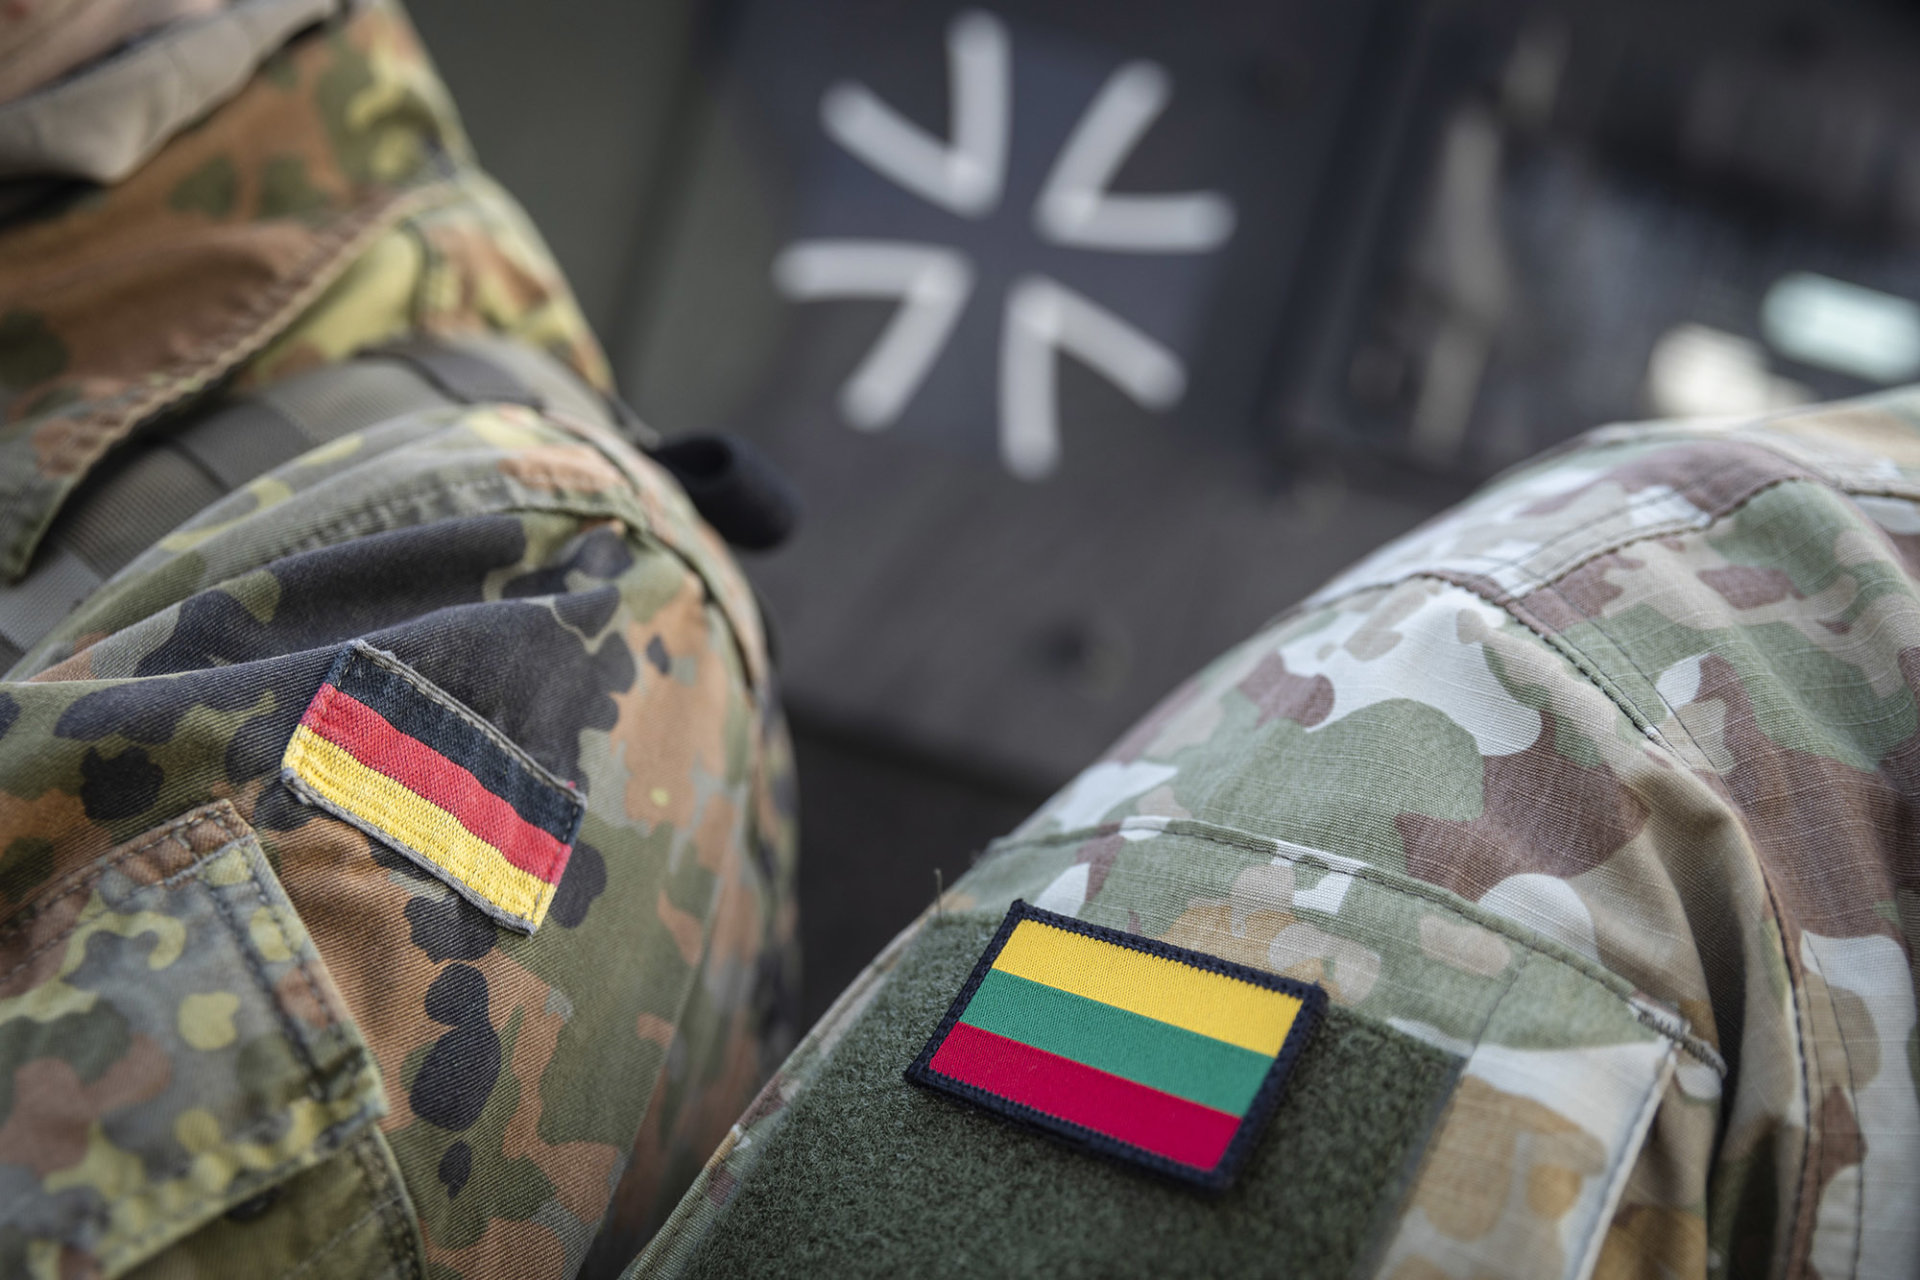 Vokietijos gynybos ministras: esame pasirengę visam laikui dislokuoti brigadą Lietuvoje